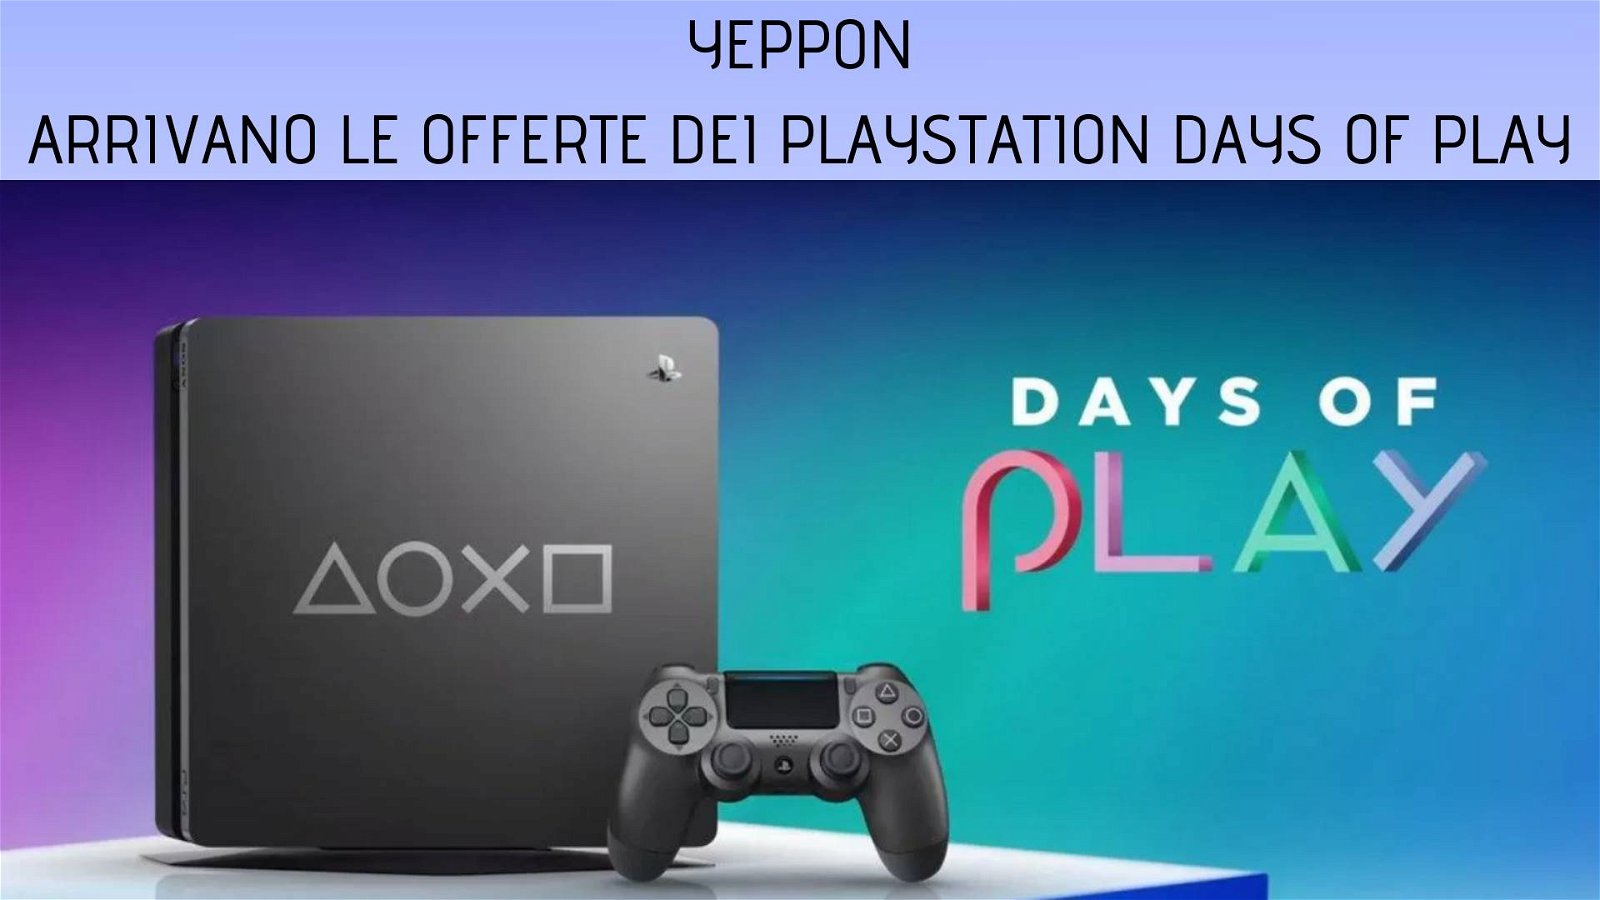 Immagine di Arrivano le offerte dei PlayStation Days of Play su Yeppon!